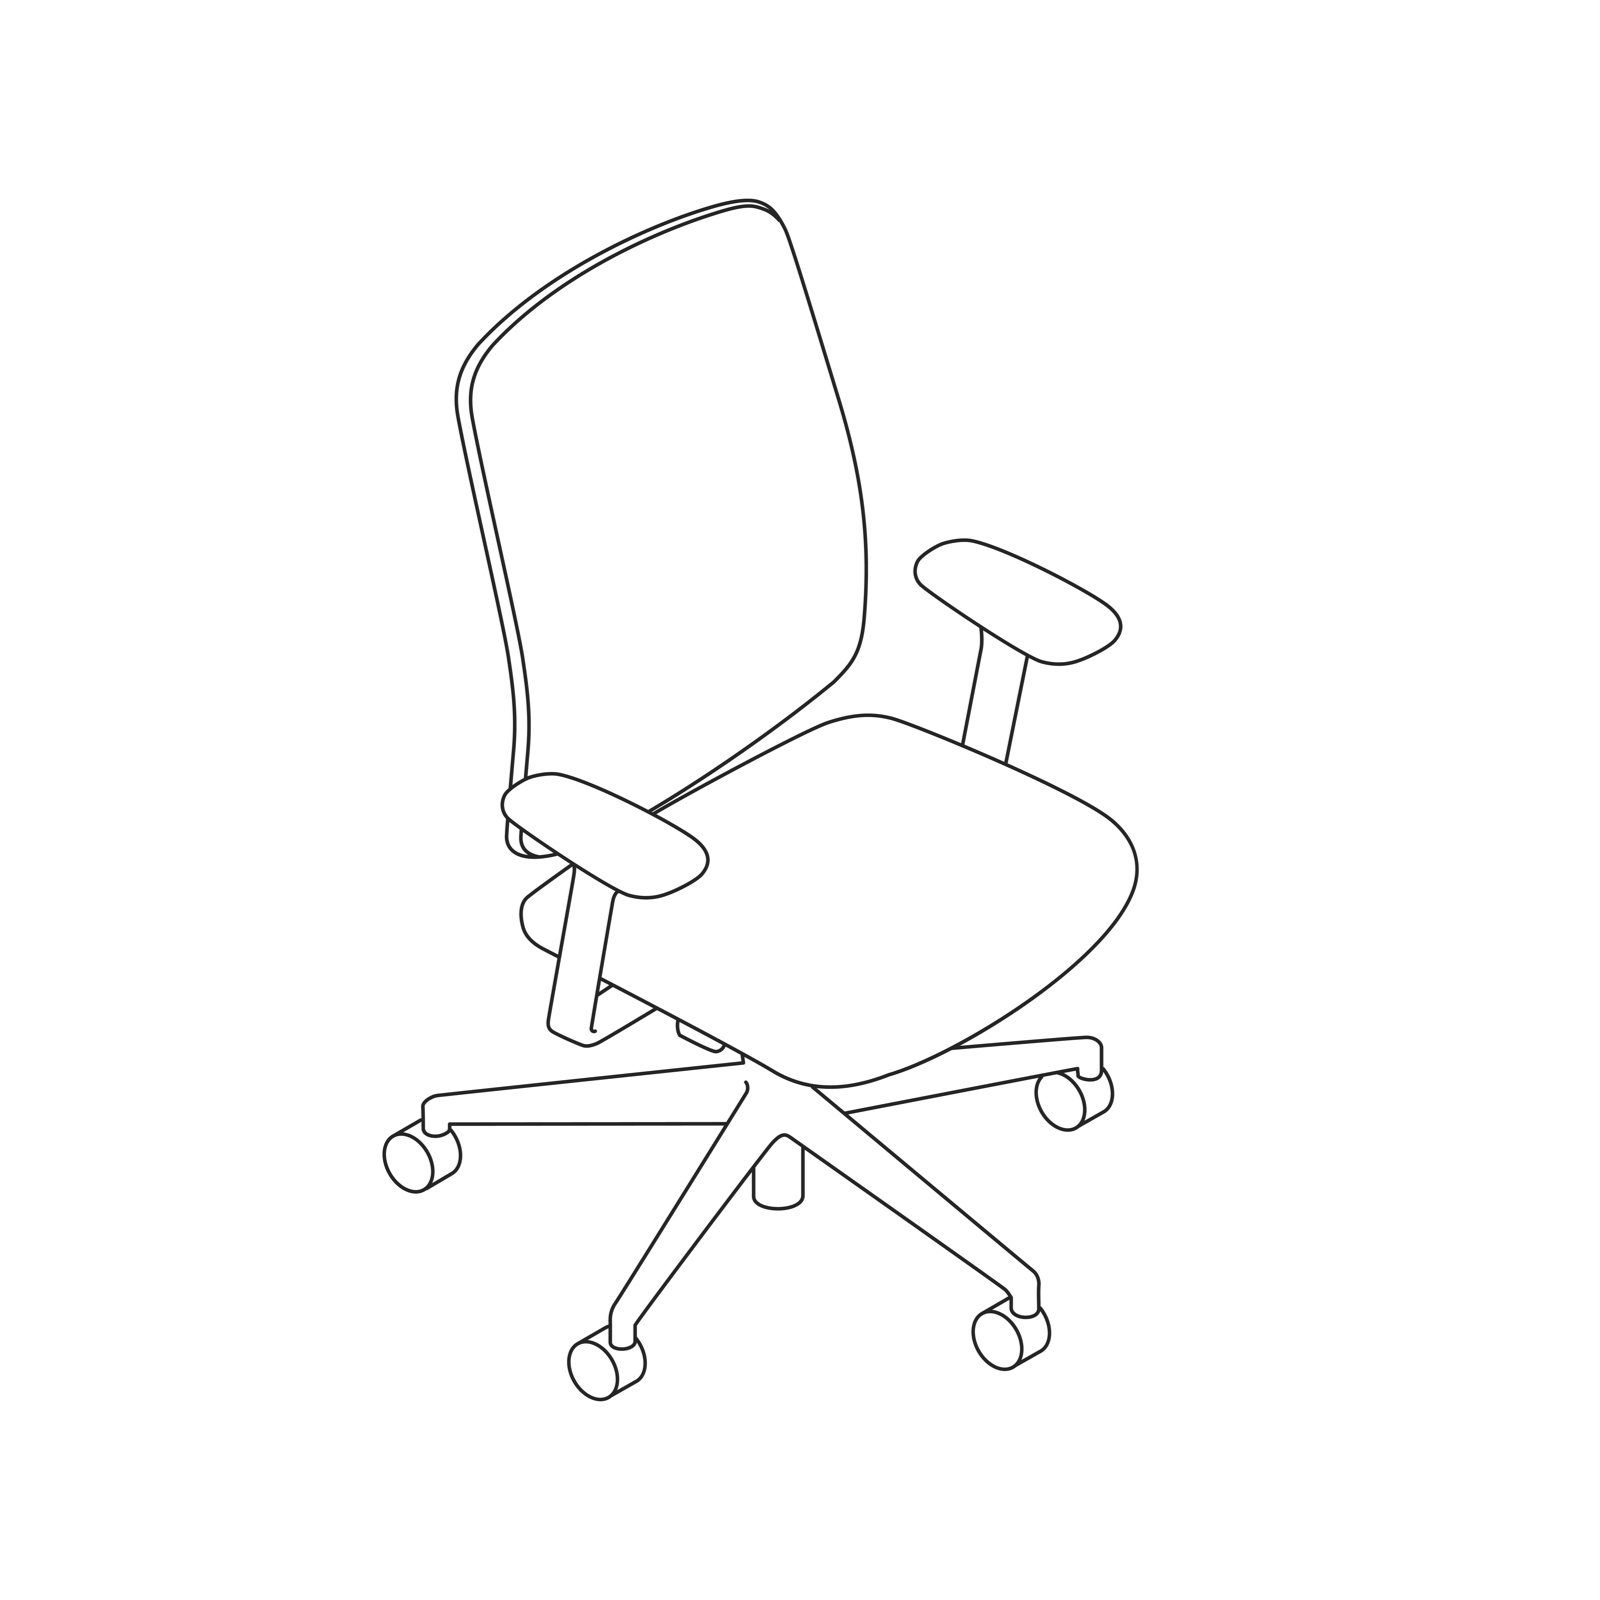 Desenho de linha de uma cadeira Verus.